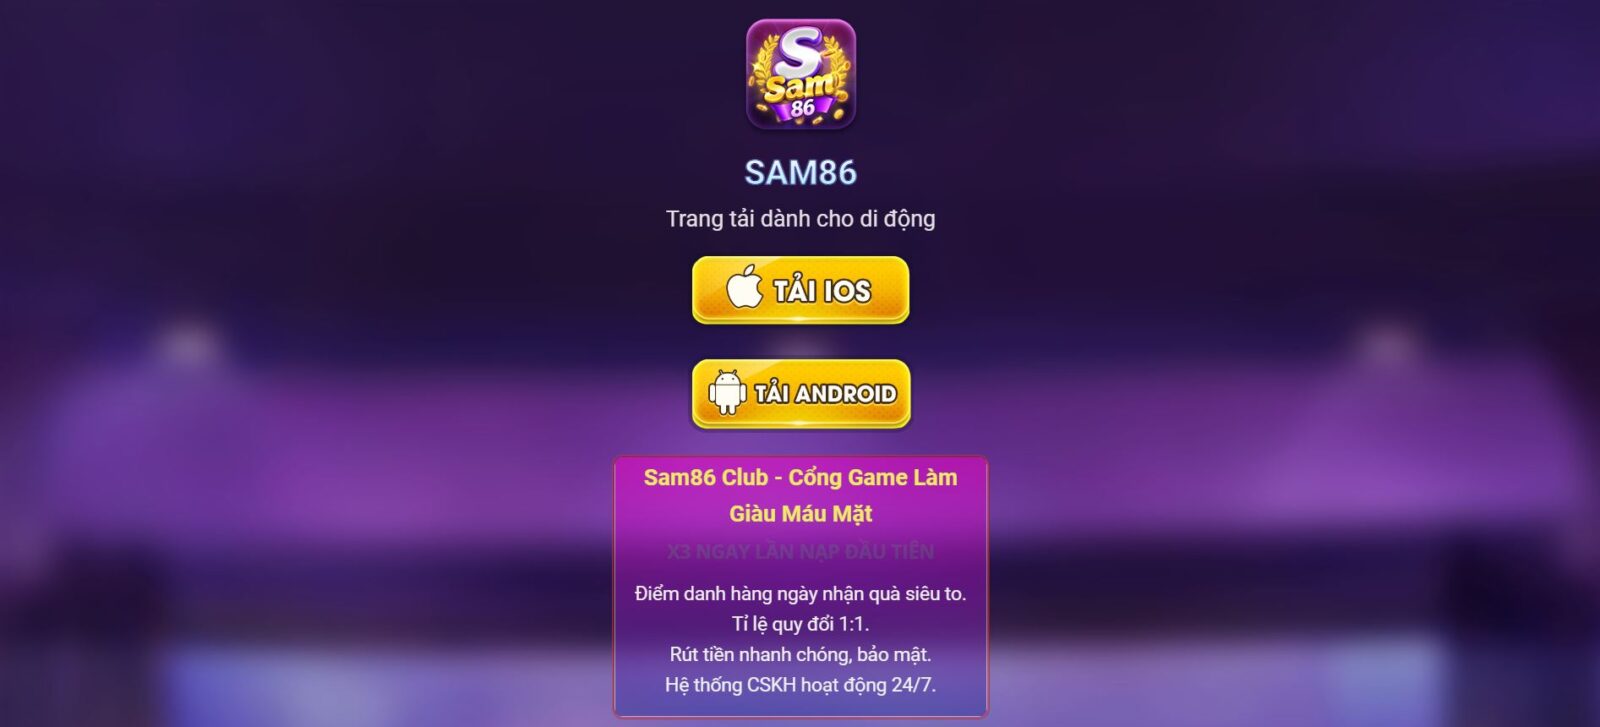 Sam86 club - Sân chơi được hàng triệu game thủ yêu thích 